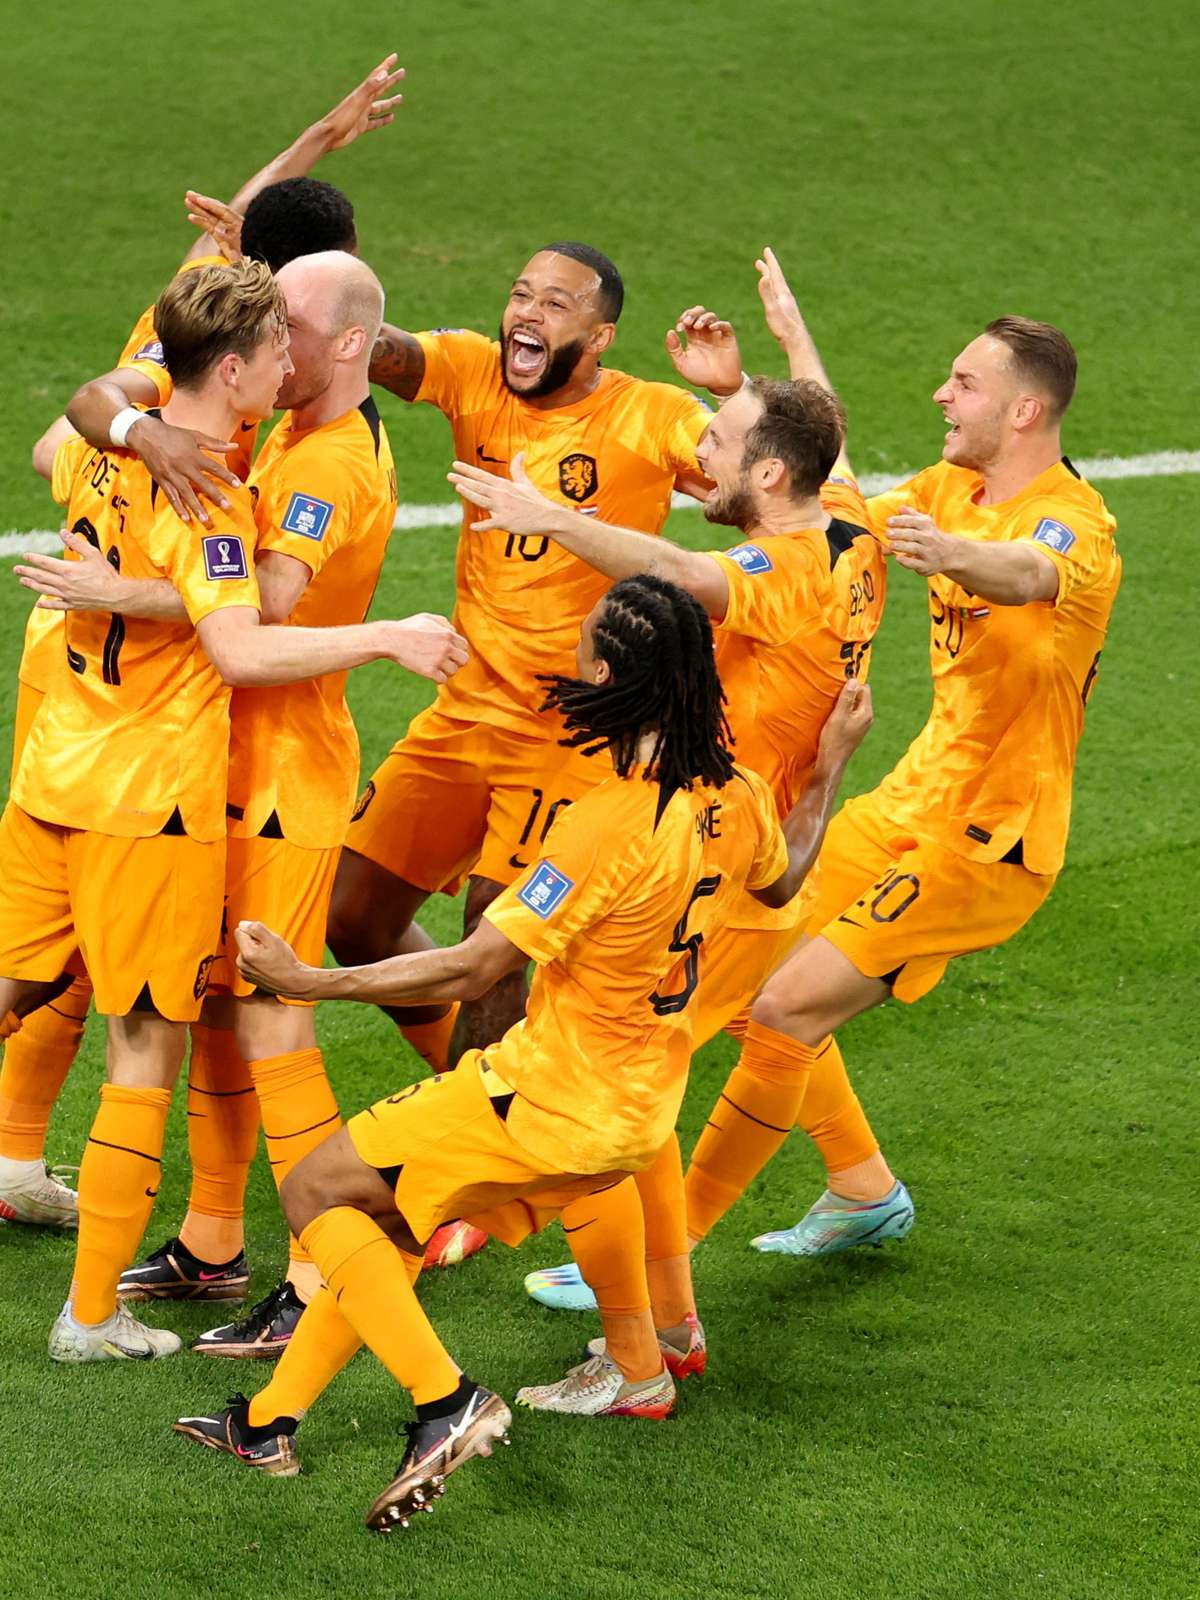 Copa do Mundo: Holanda e Equador empatam e eliminam Catar